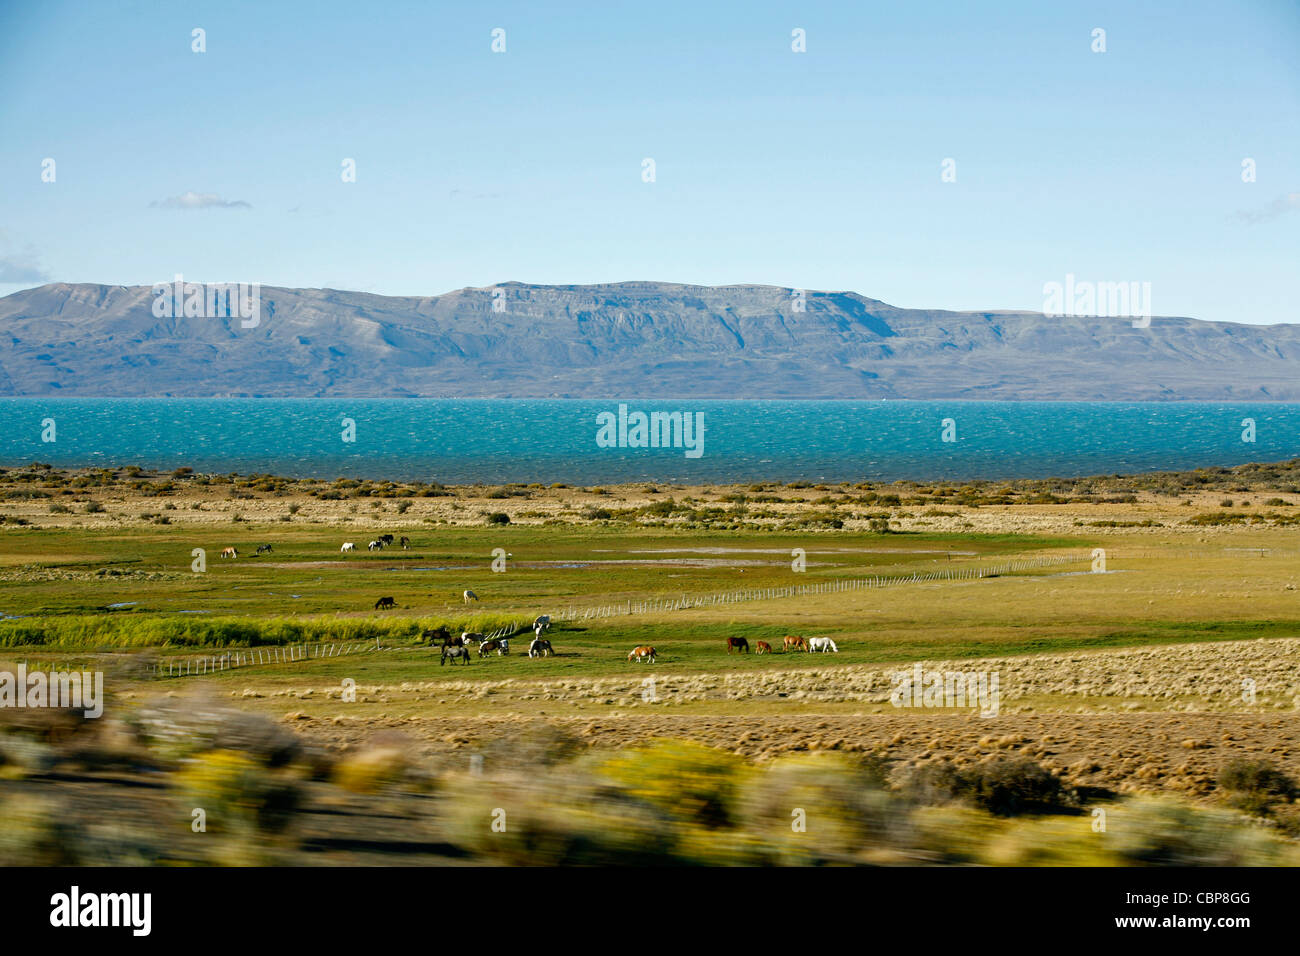 Landschaft in der Nähe von El Calafate Bereich mit Lago Argentino auf dem Hintergrund, Provinz Santa Cruz. Patagonien. Argentinien. Stockfoto